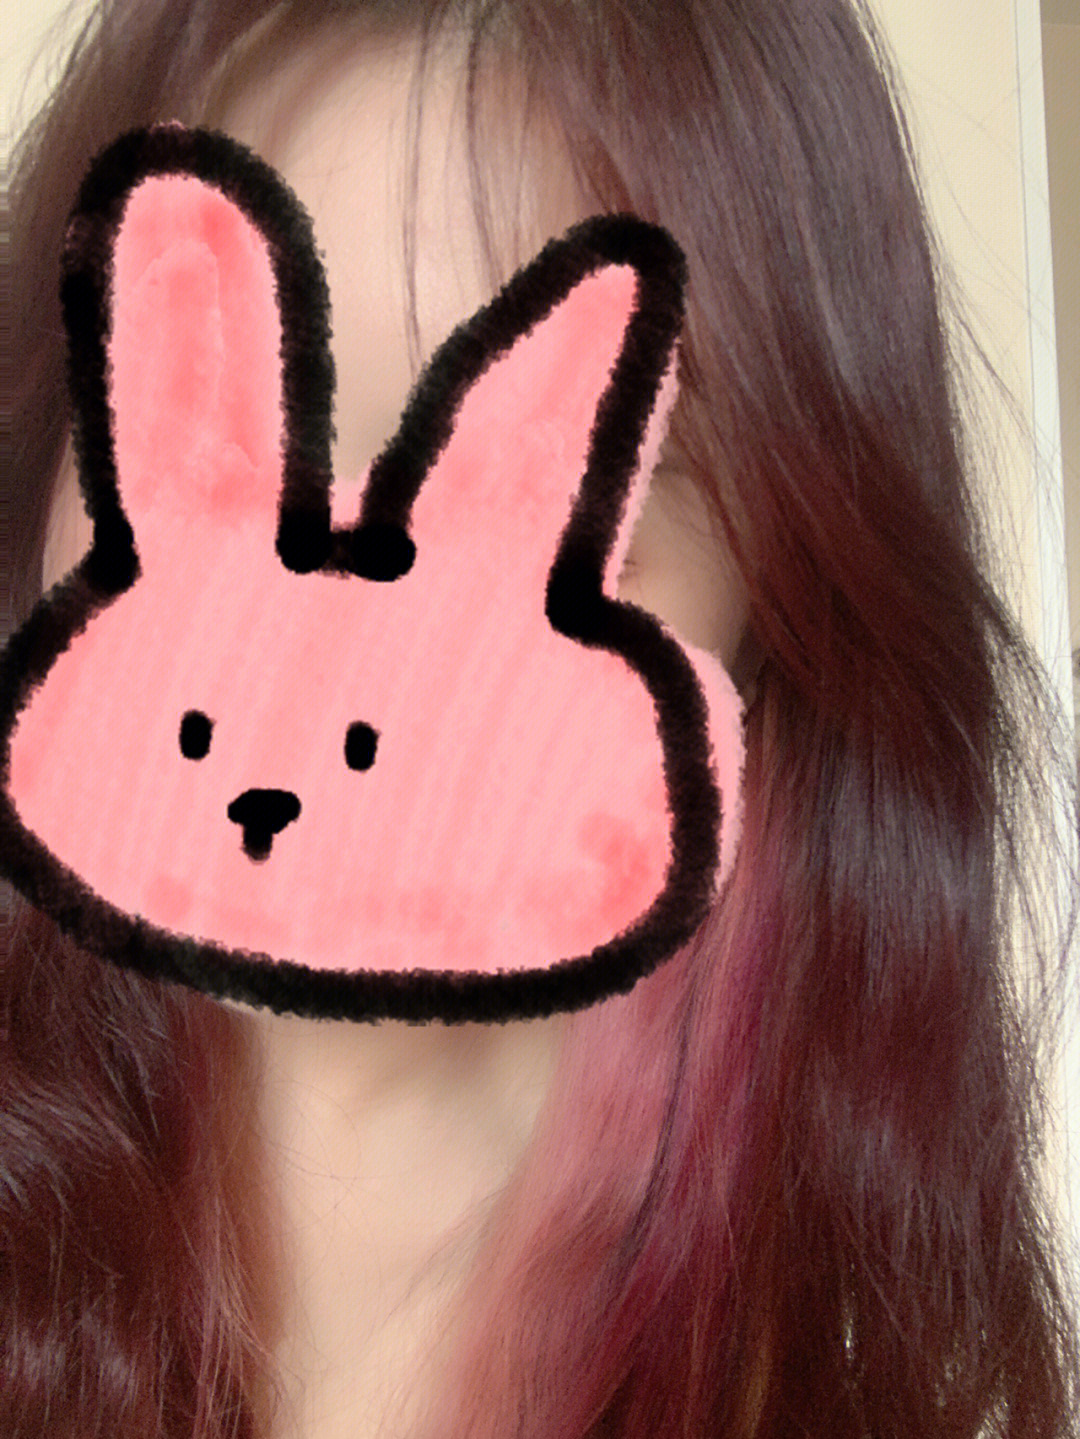 黑发挑染粉色图片